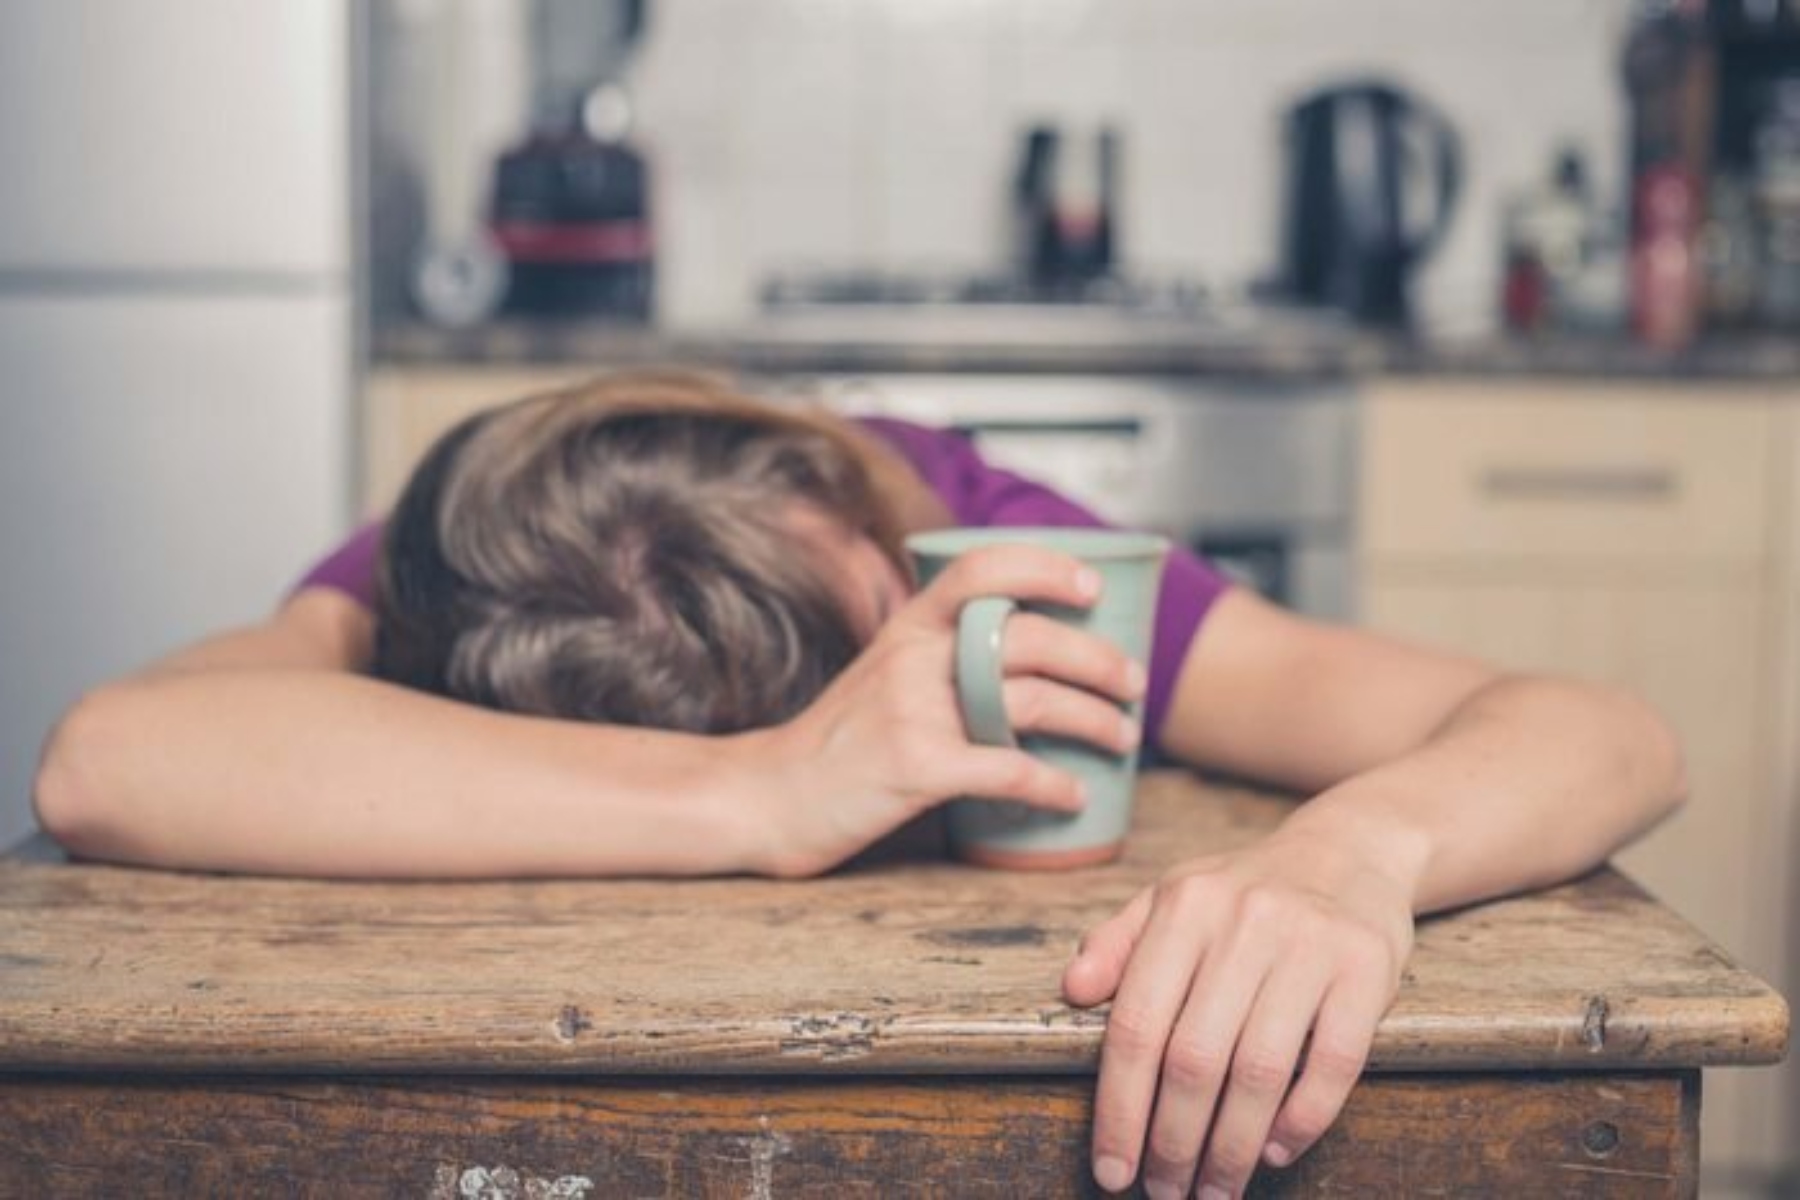 Σεξ κούραση: Πώς να αντιμετωπίσουμε την κούραση της ημέρας στο κρεβάτι;